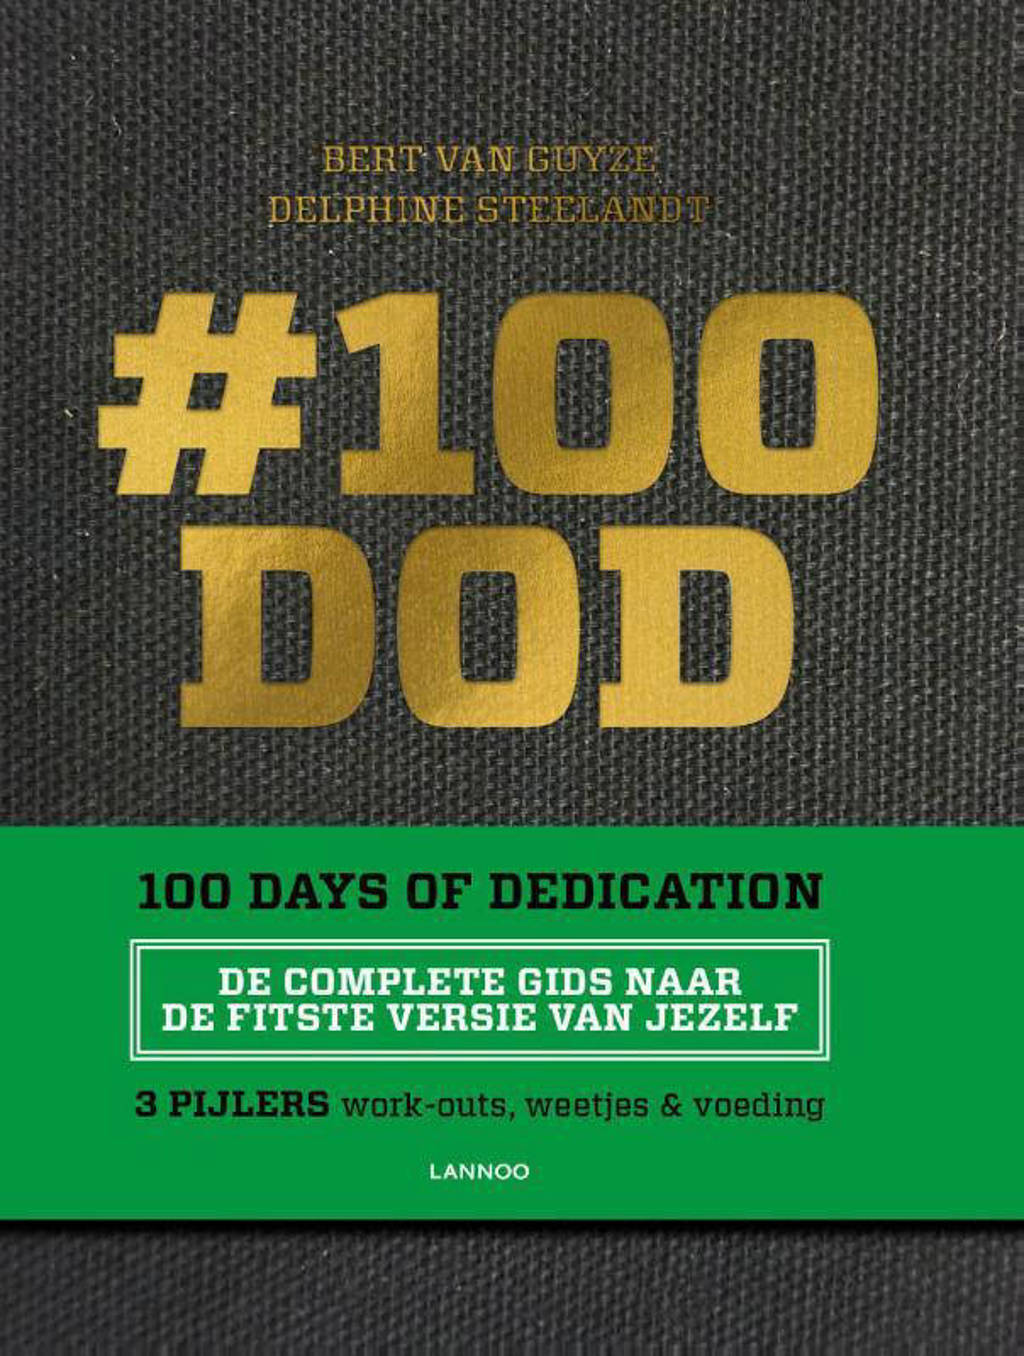 #100DOD - 100 days of dedication - Bert Van Guyze en Delphine Steelandt